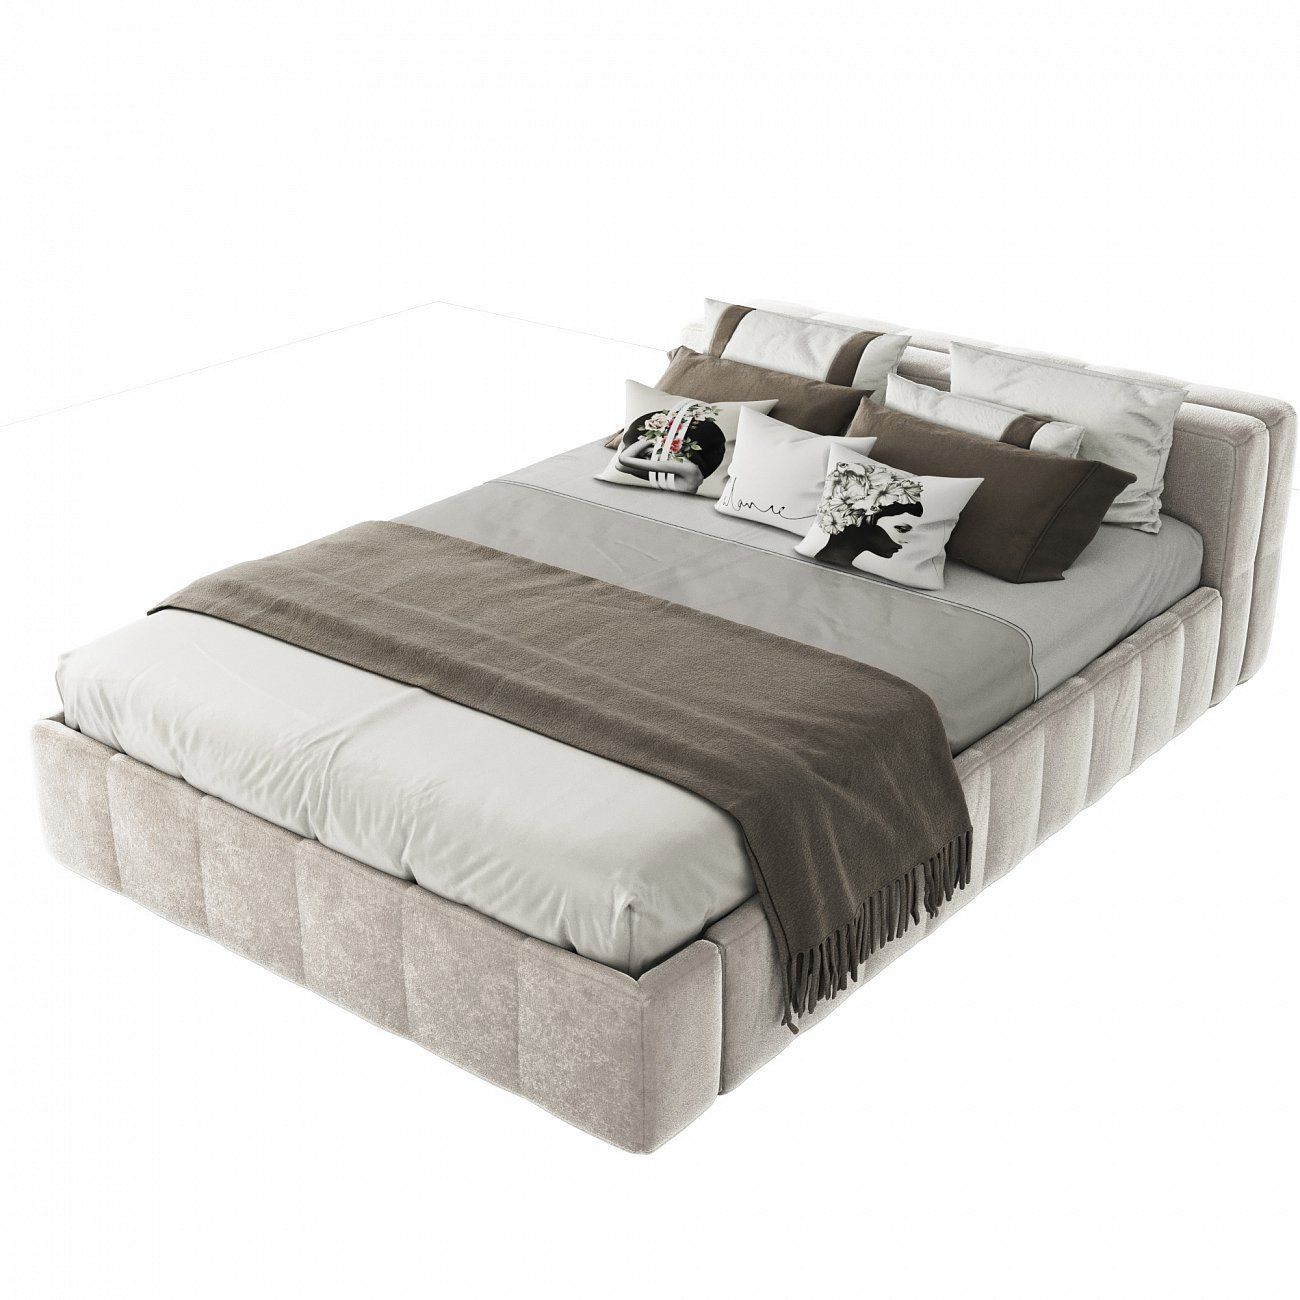 Кровать подростковая 140х200 см молочная Bonaldo